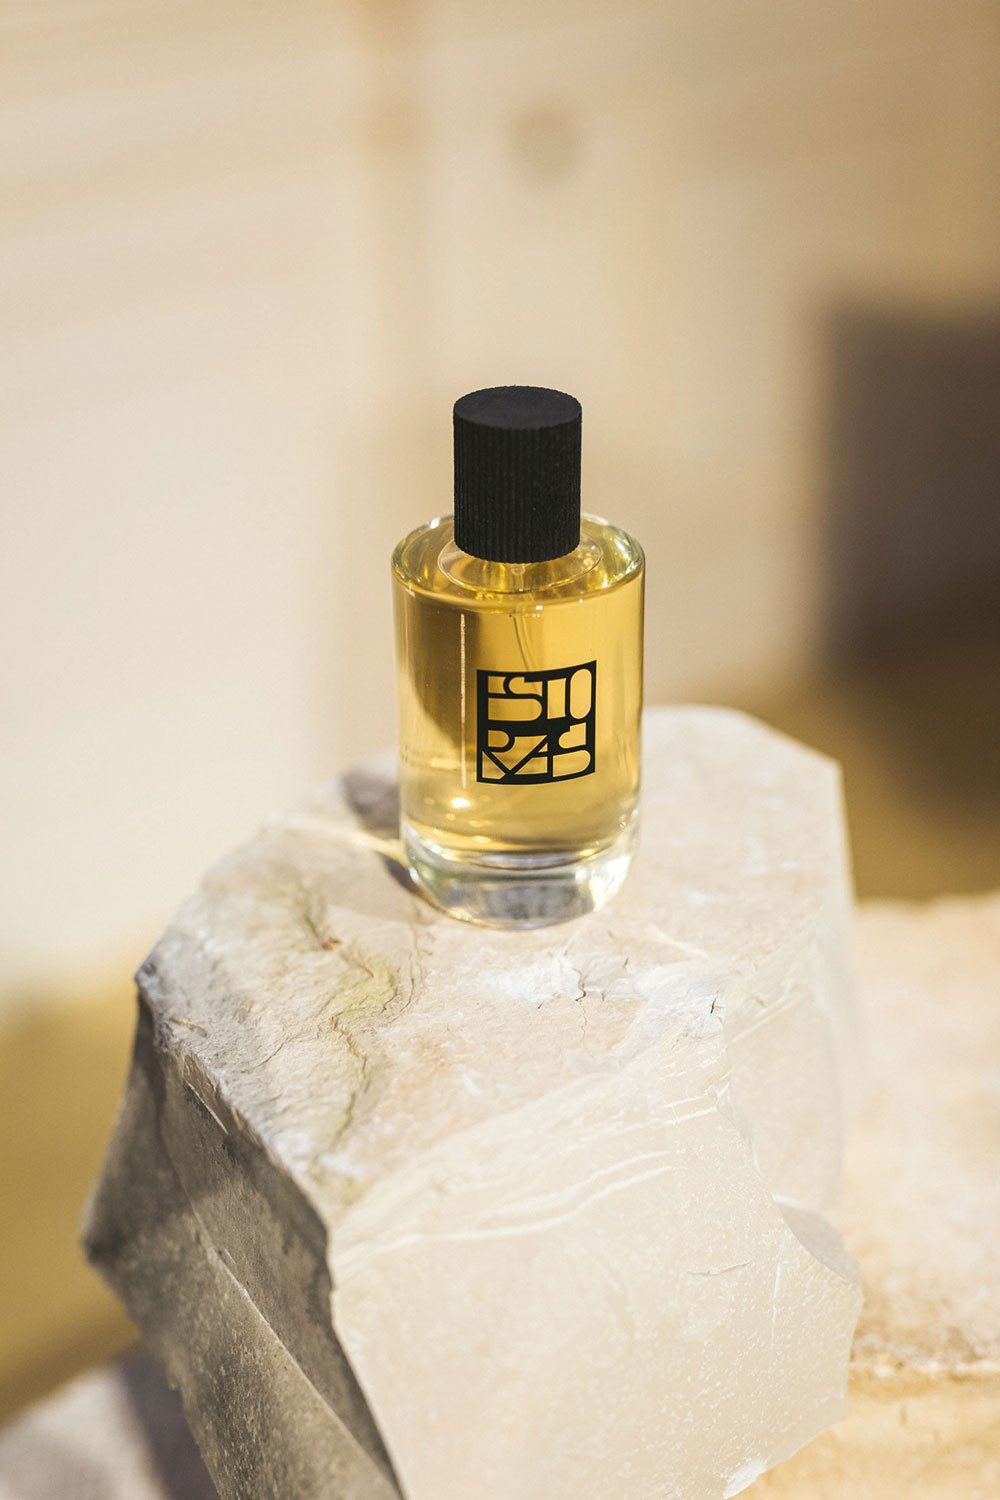 Der holzig-würzige Duft wurde von Marie Urban Le Febvre, Perfumer-Créateur und Gründerin der Manufaktur Urban Scents in Berlin, kreiert.